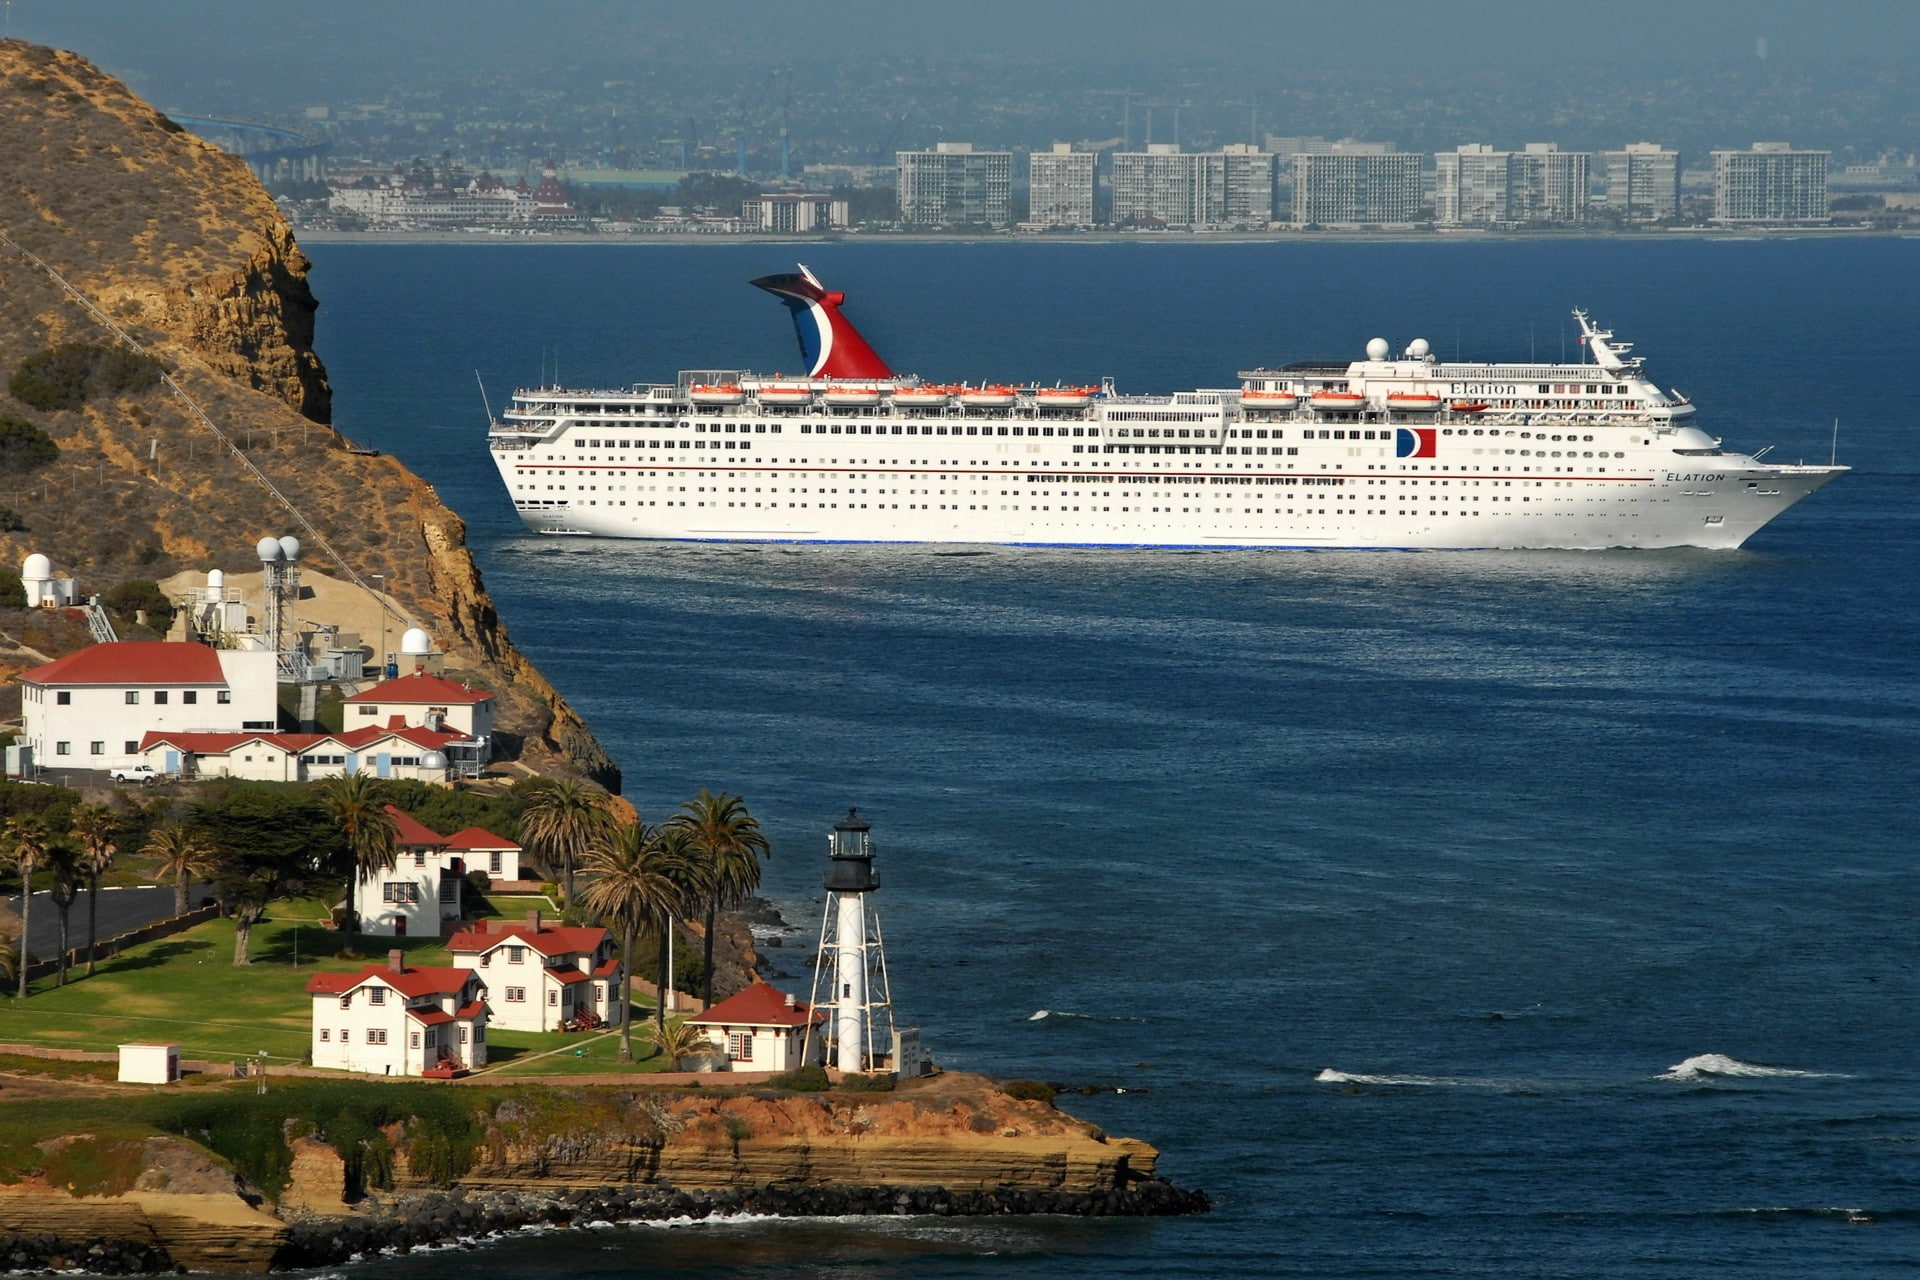 ferry, cruise ship, vehicle